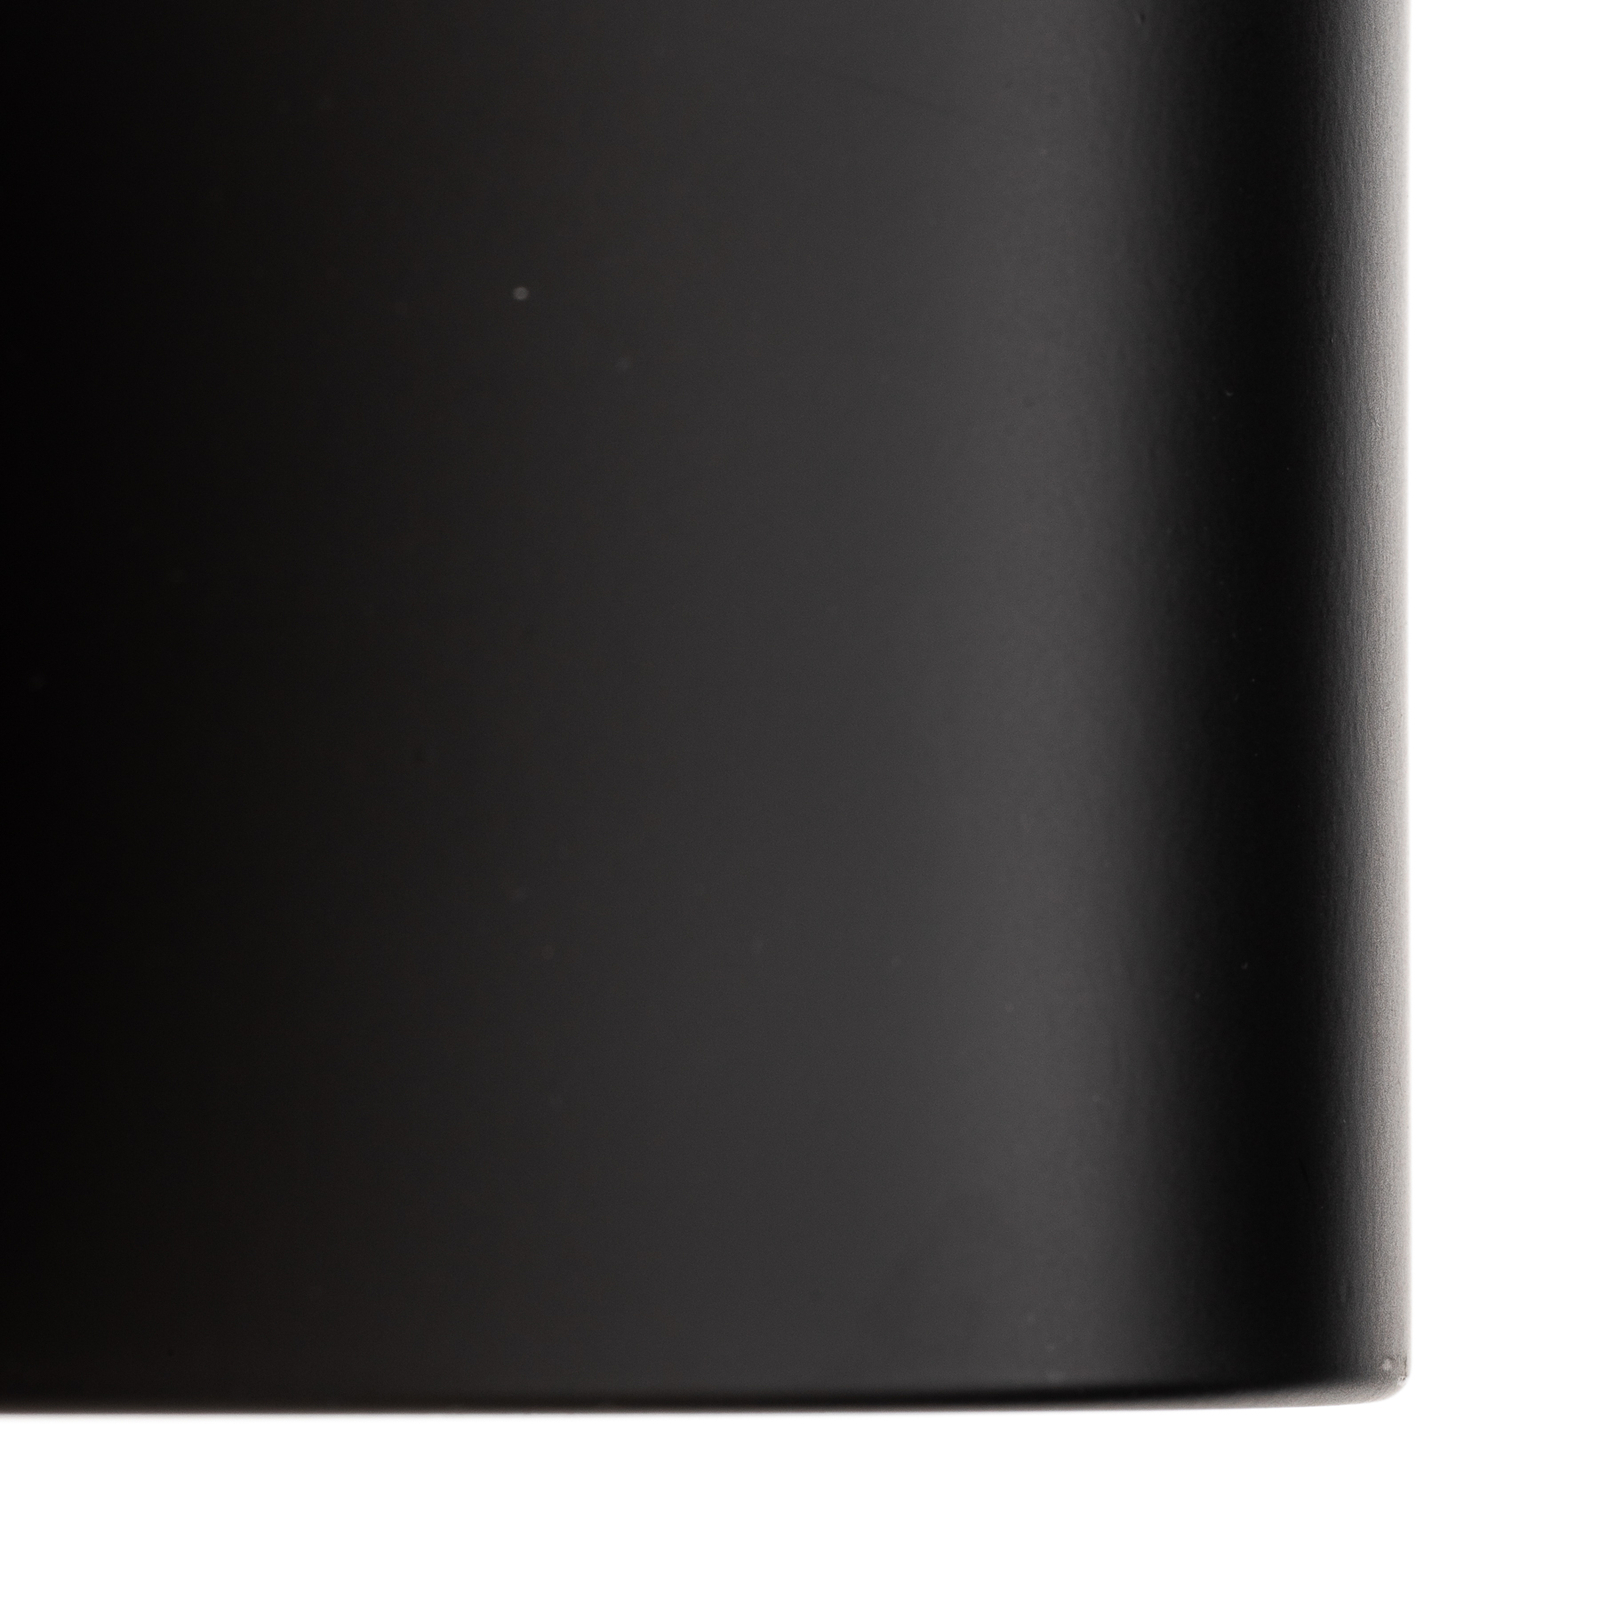 Ita LED-downlight i svart med kupa, Ø 15 cm